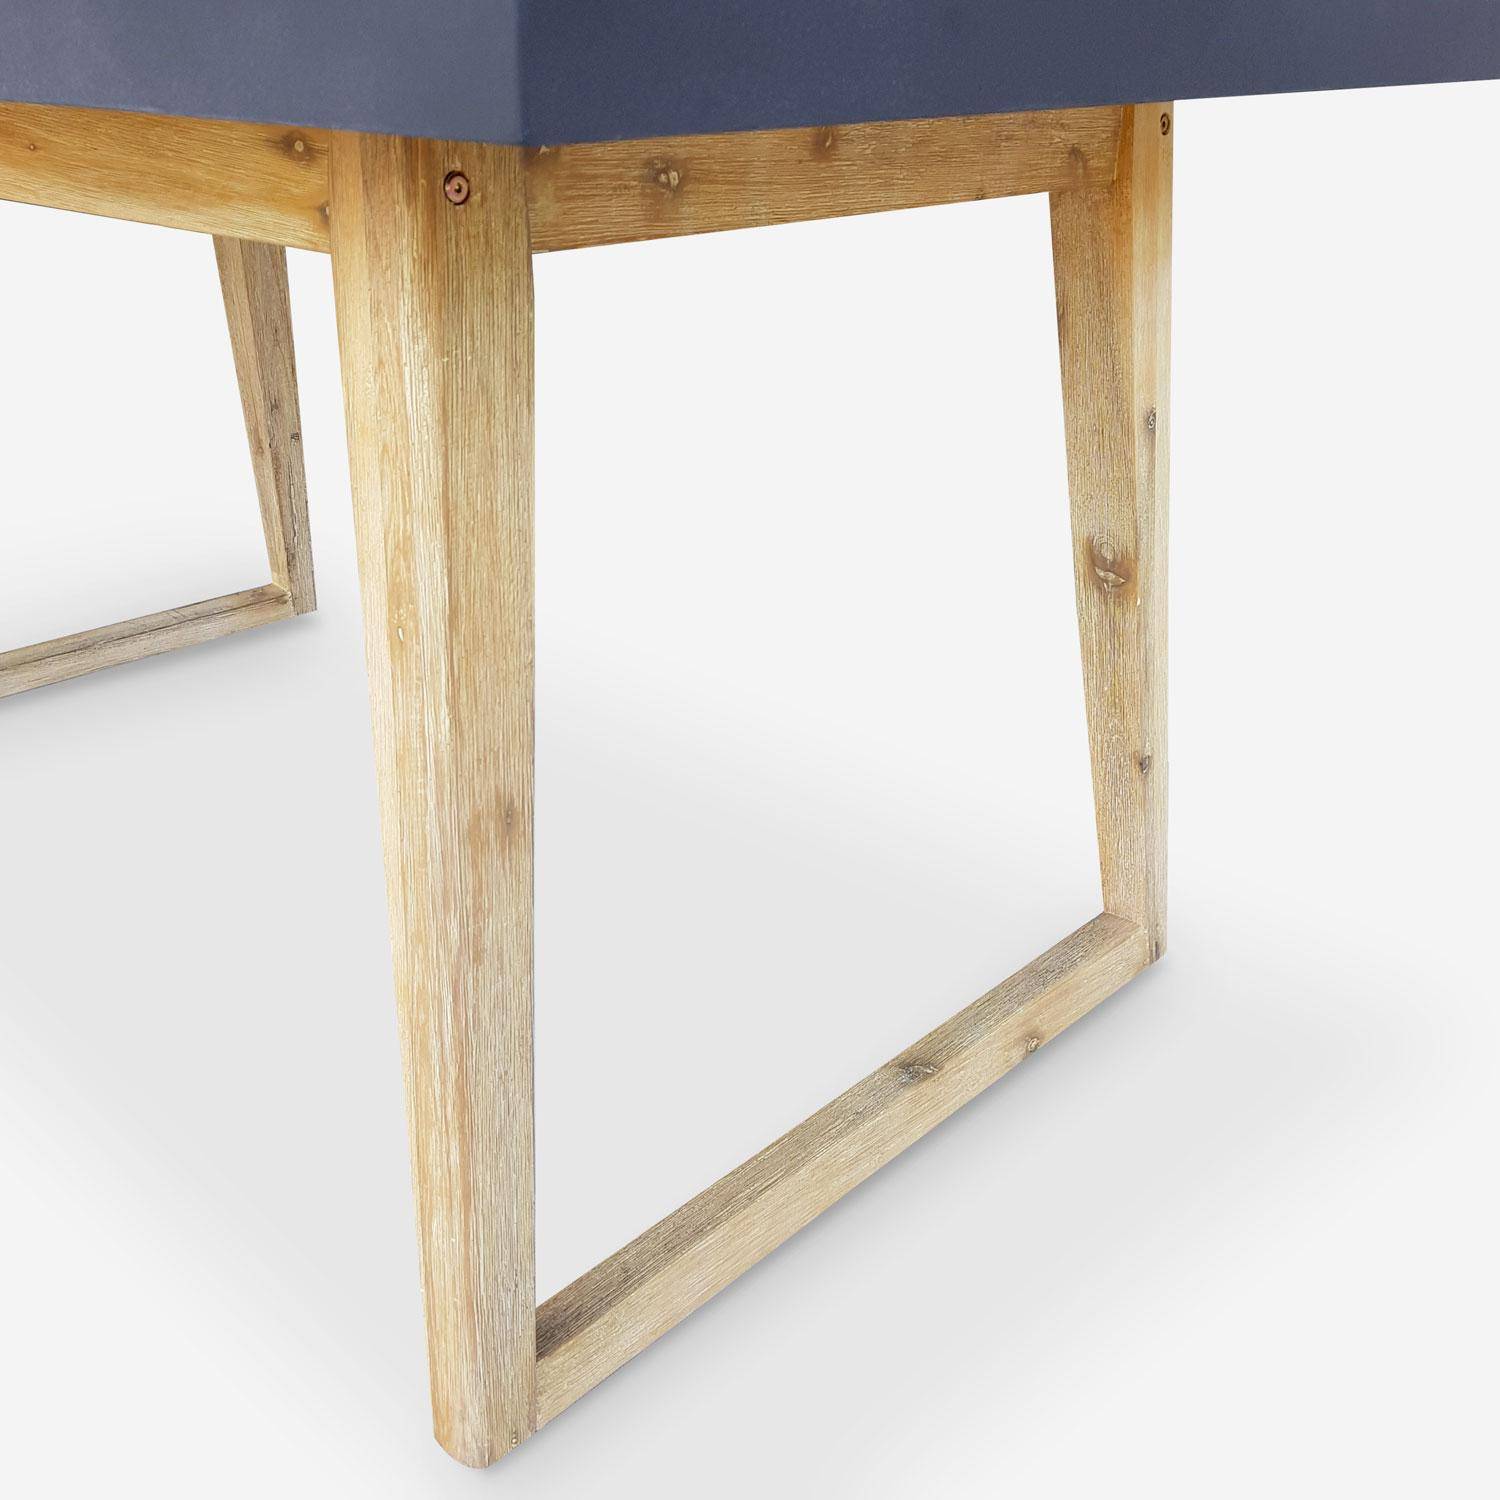 Gartentisch aus Faserzement 160 cm, U-förmiger Holzfuß - BORNEO - 4 Personen, Akazienbeine, graue Platte Photo3